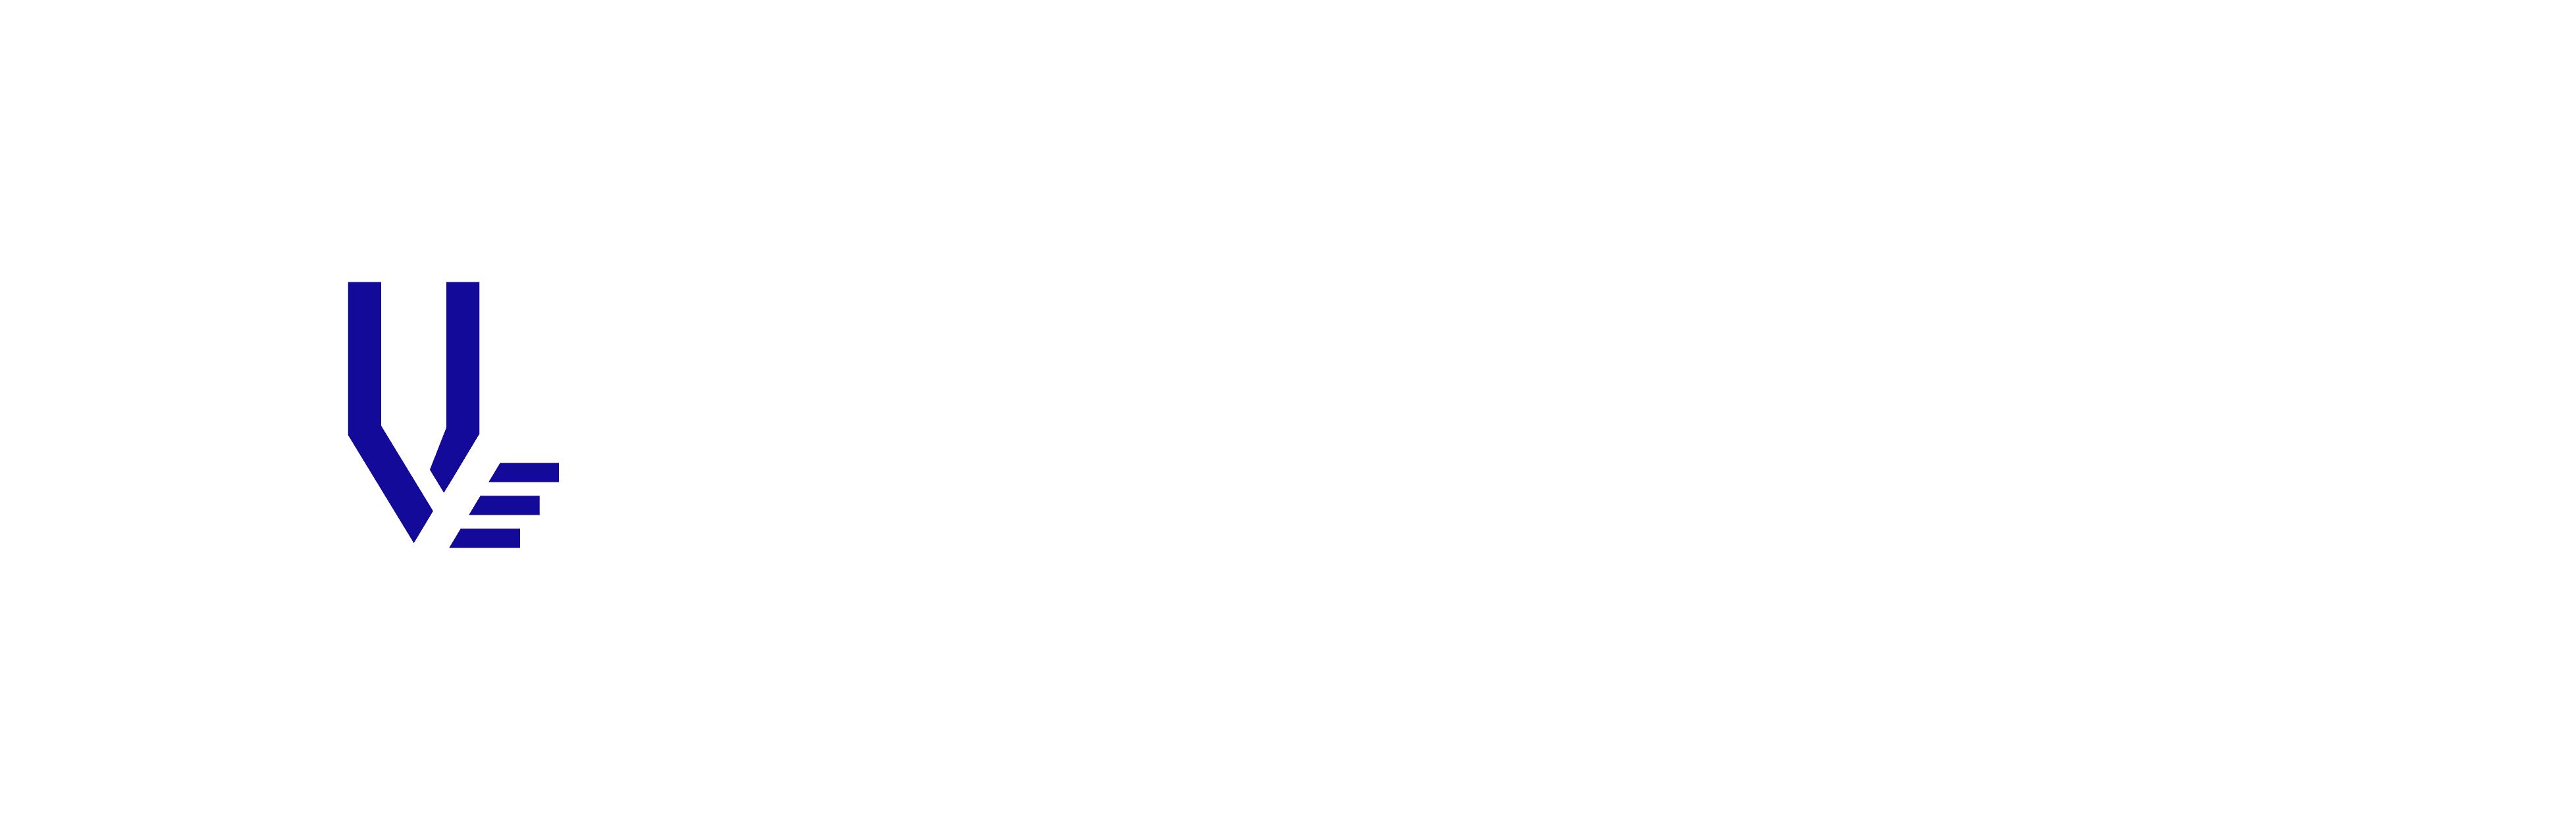 Smart Construction Design 3D